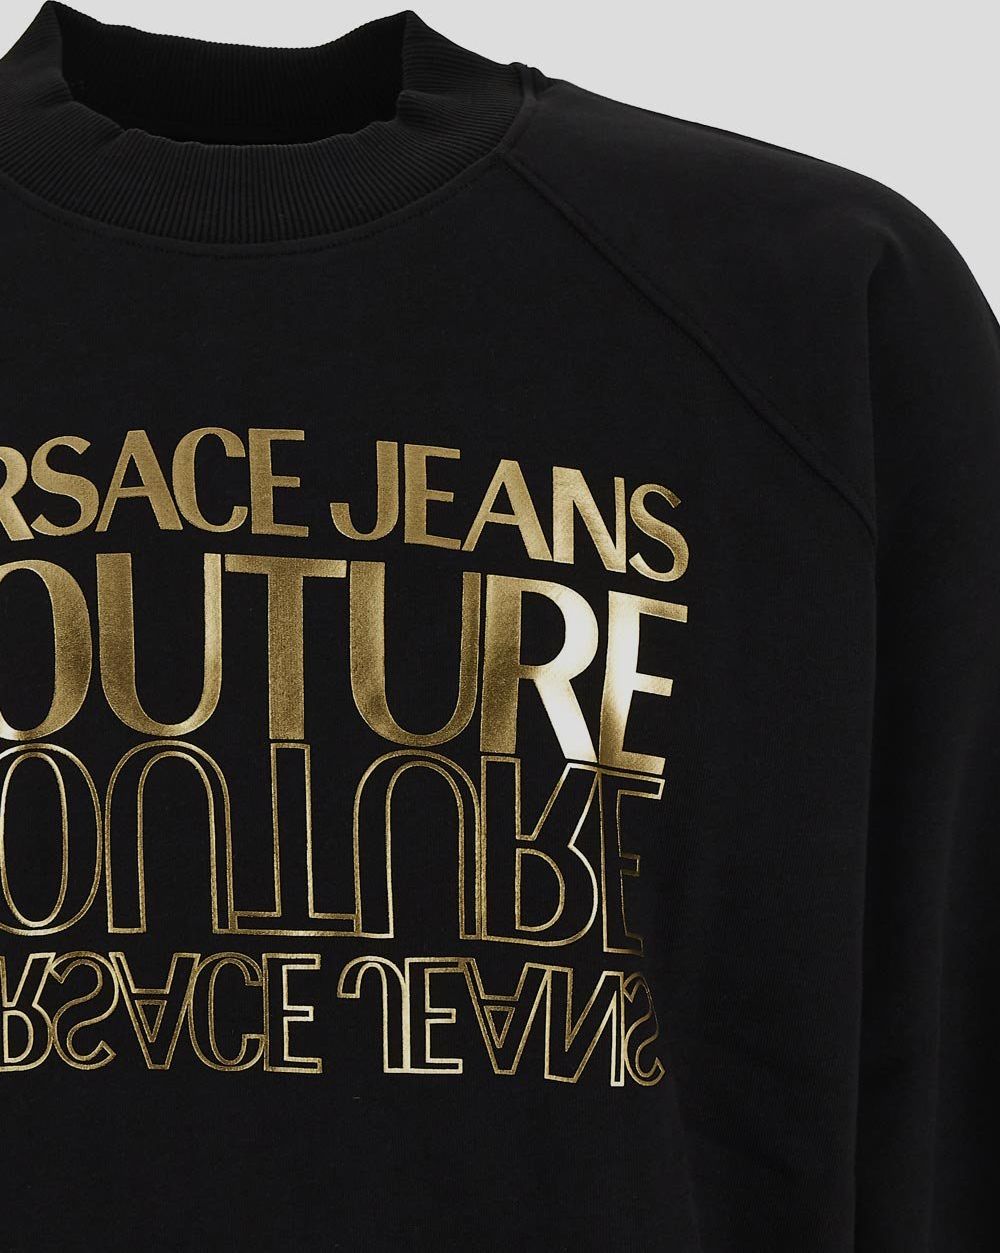 Versace Jeans Couture Logo Sweatshirt Zwart